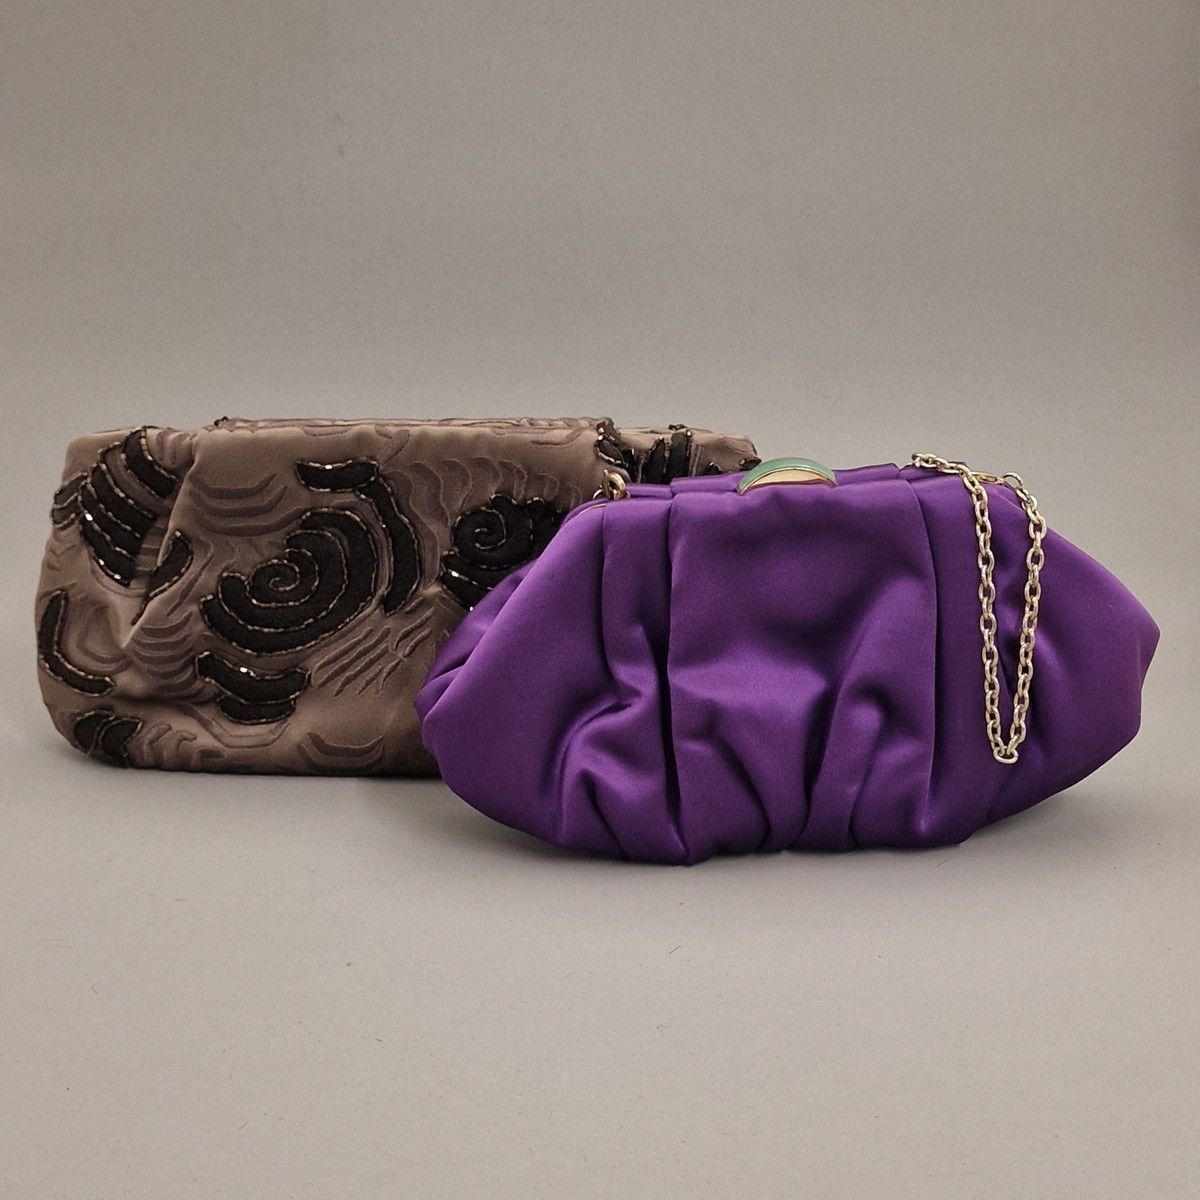 Null SHANGAI TANG - 1 个手袋和 1 个晚宴包，手袋为灰褐色丝绸，饰有刺绣图案，晚宴包为紫色丝绸，玉石风格的搭扣和金色金属小链
手拿包：14&hellip;